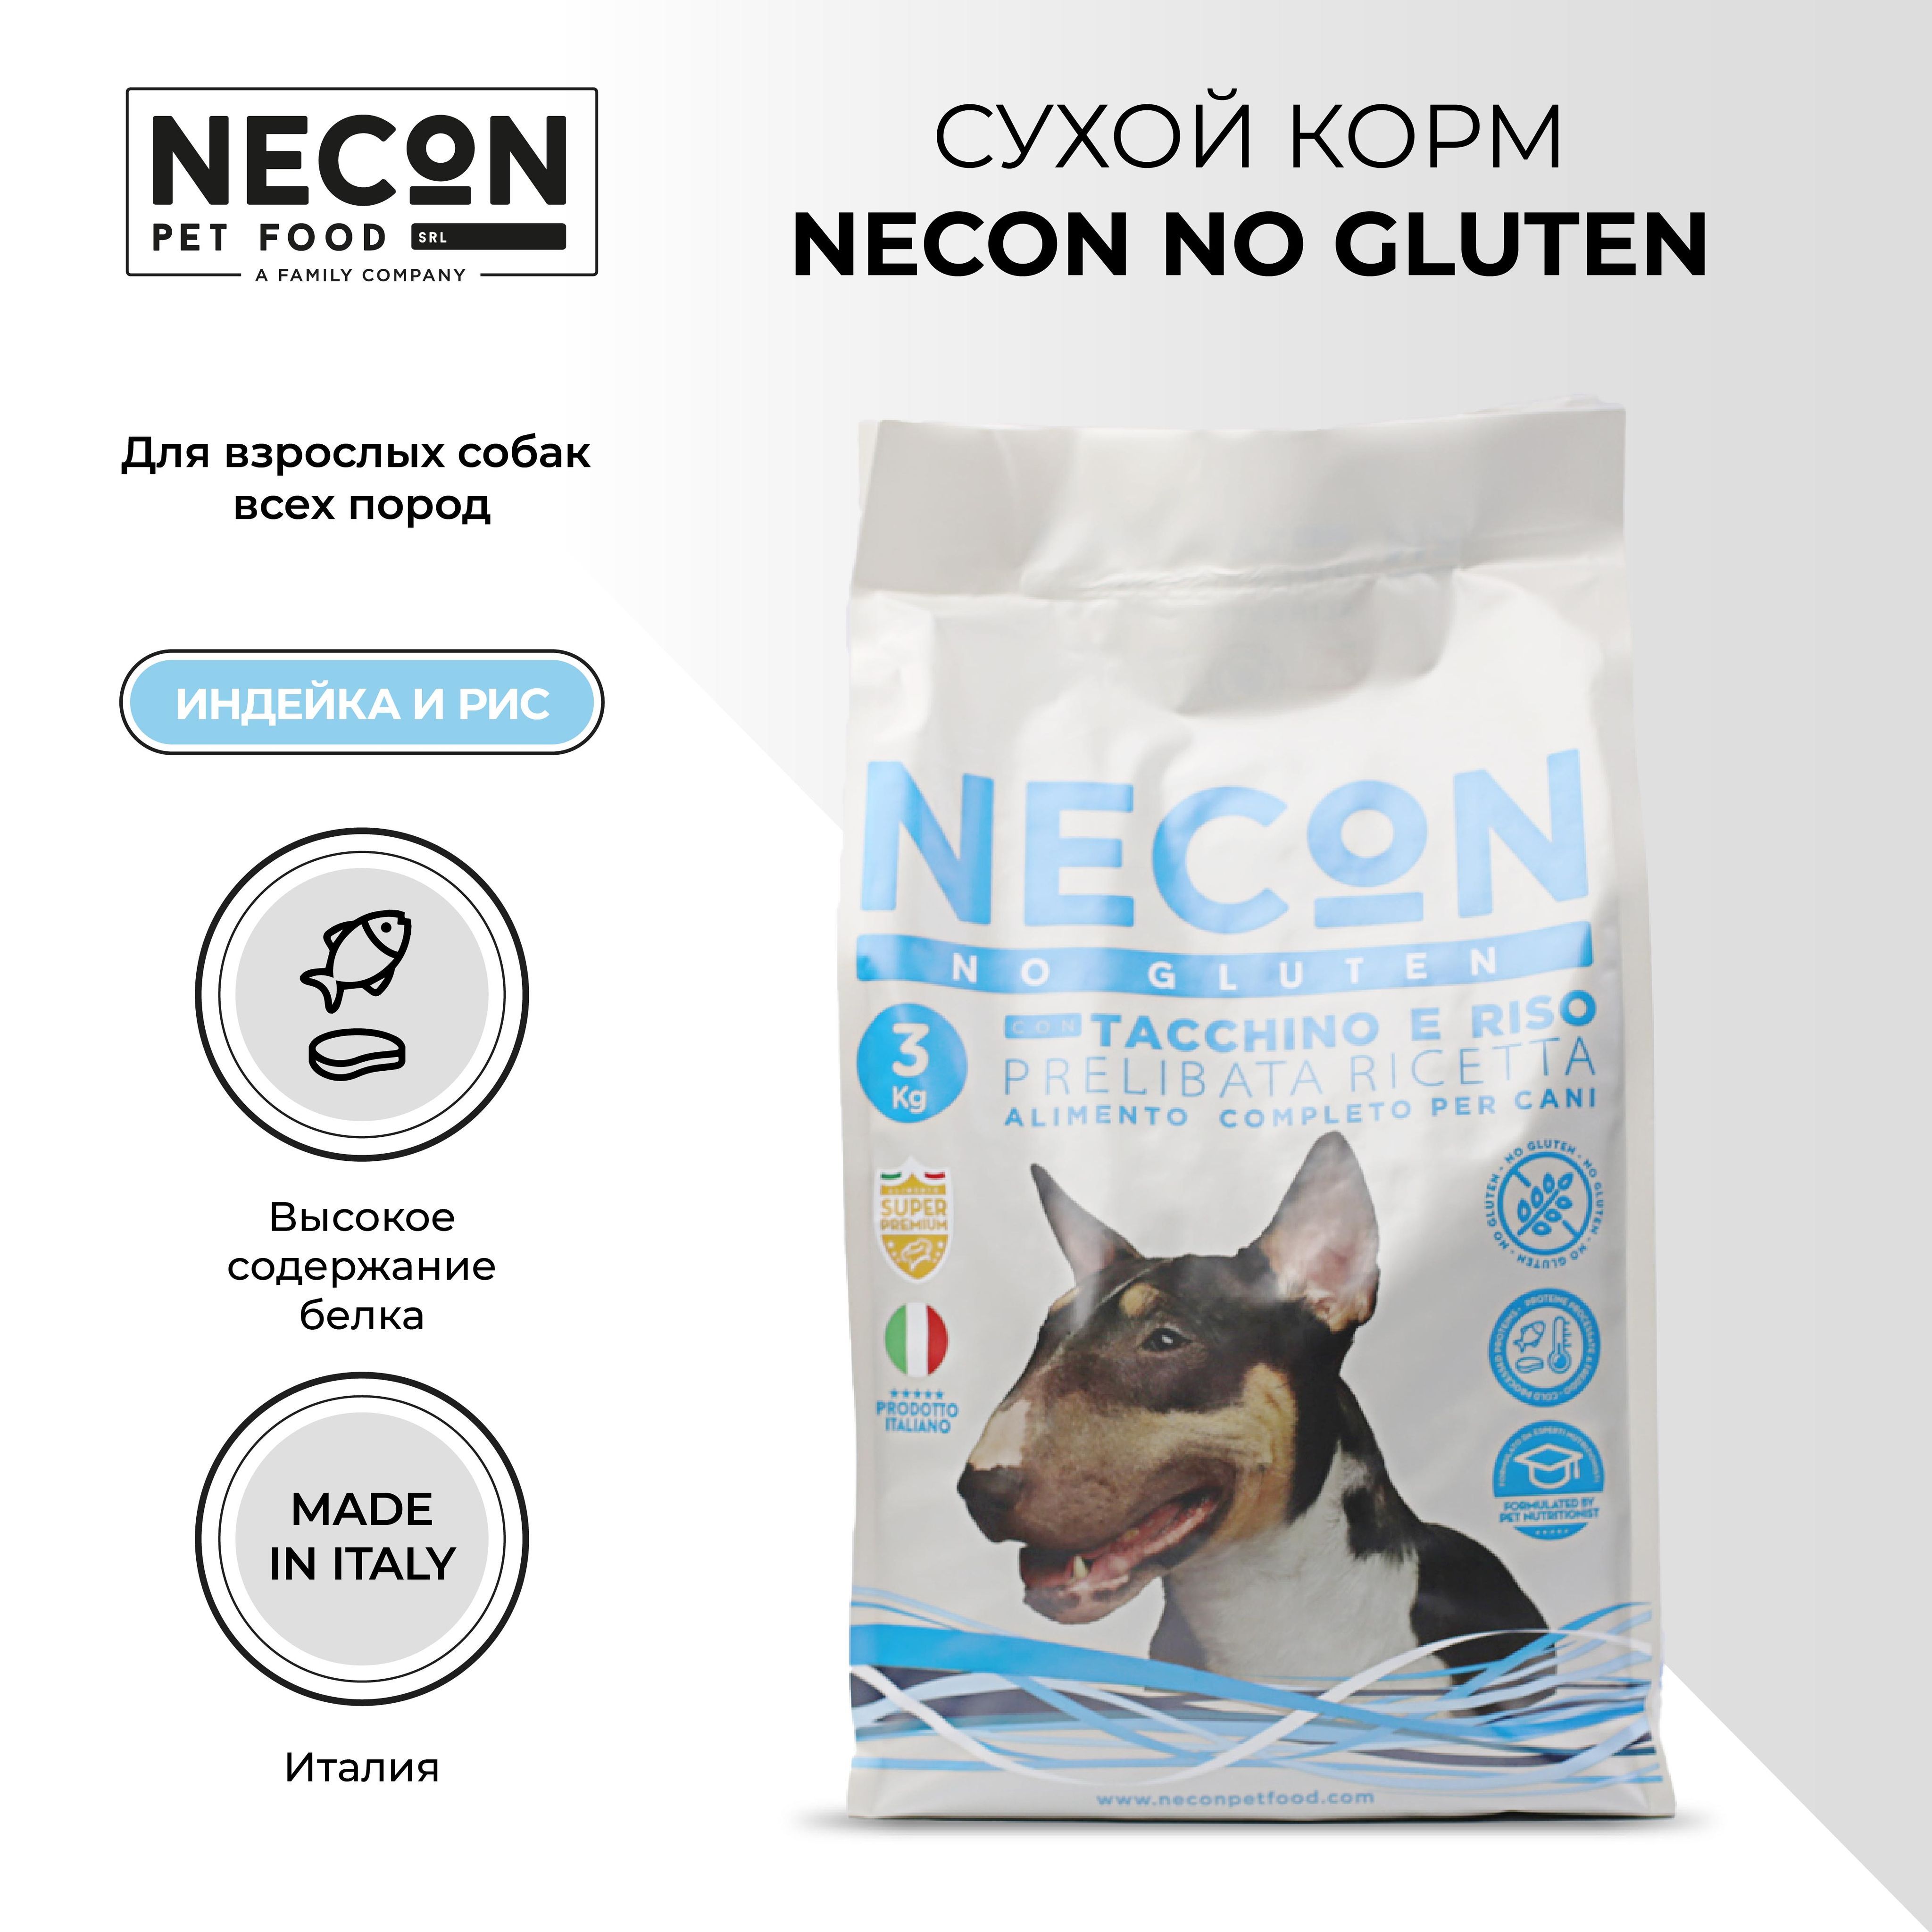 Сухой корм для собак Necon Zero Gluten TacchiZero E Riso, индейка и рис, 3 кг